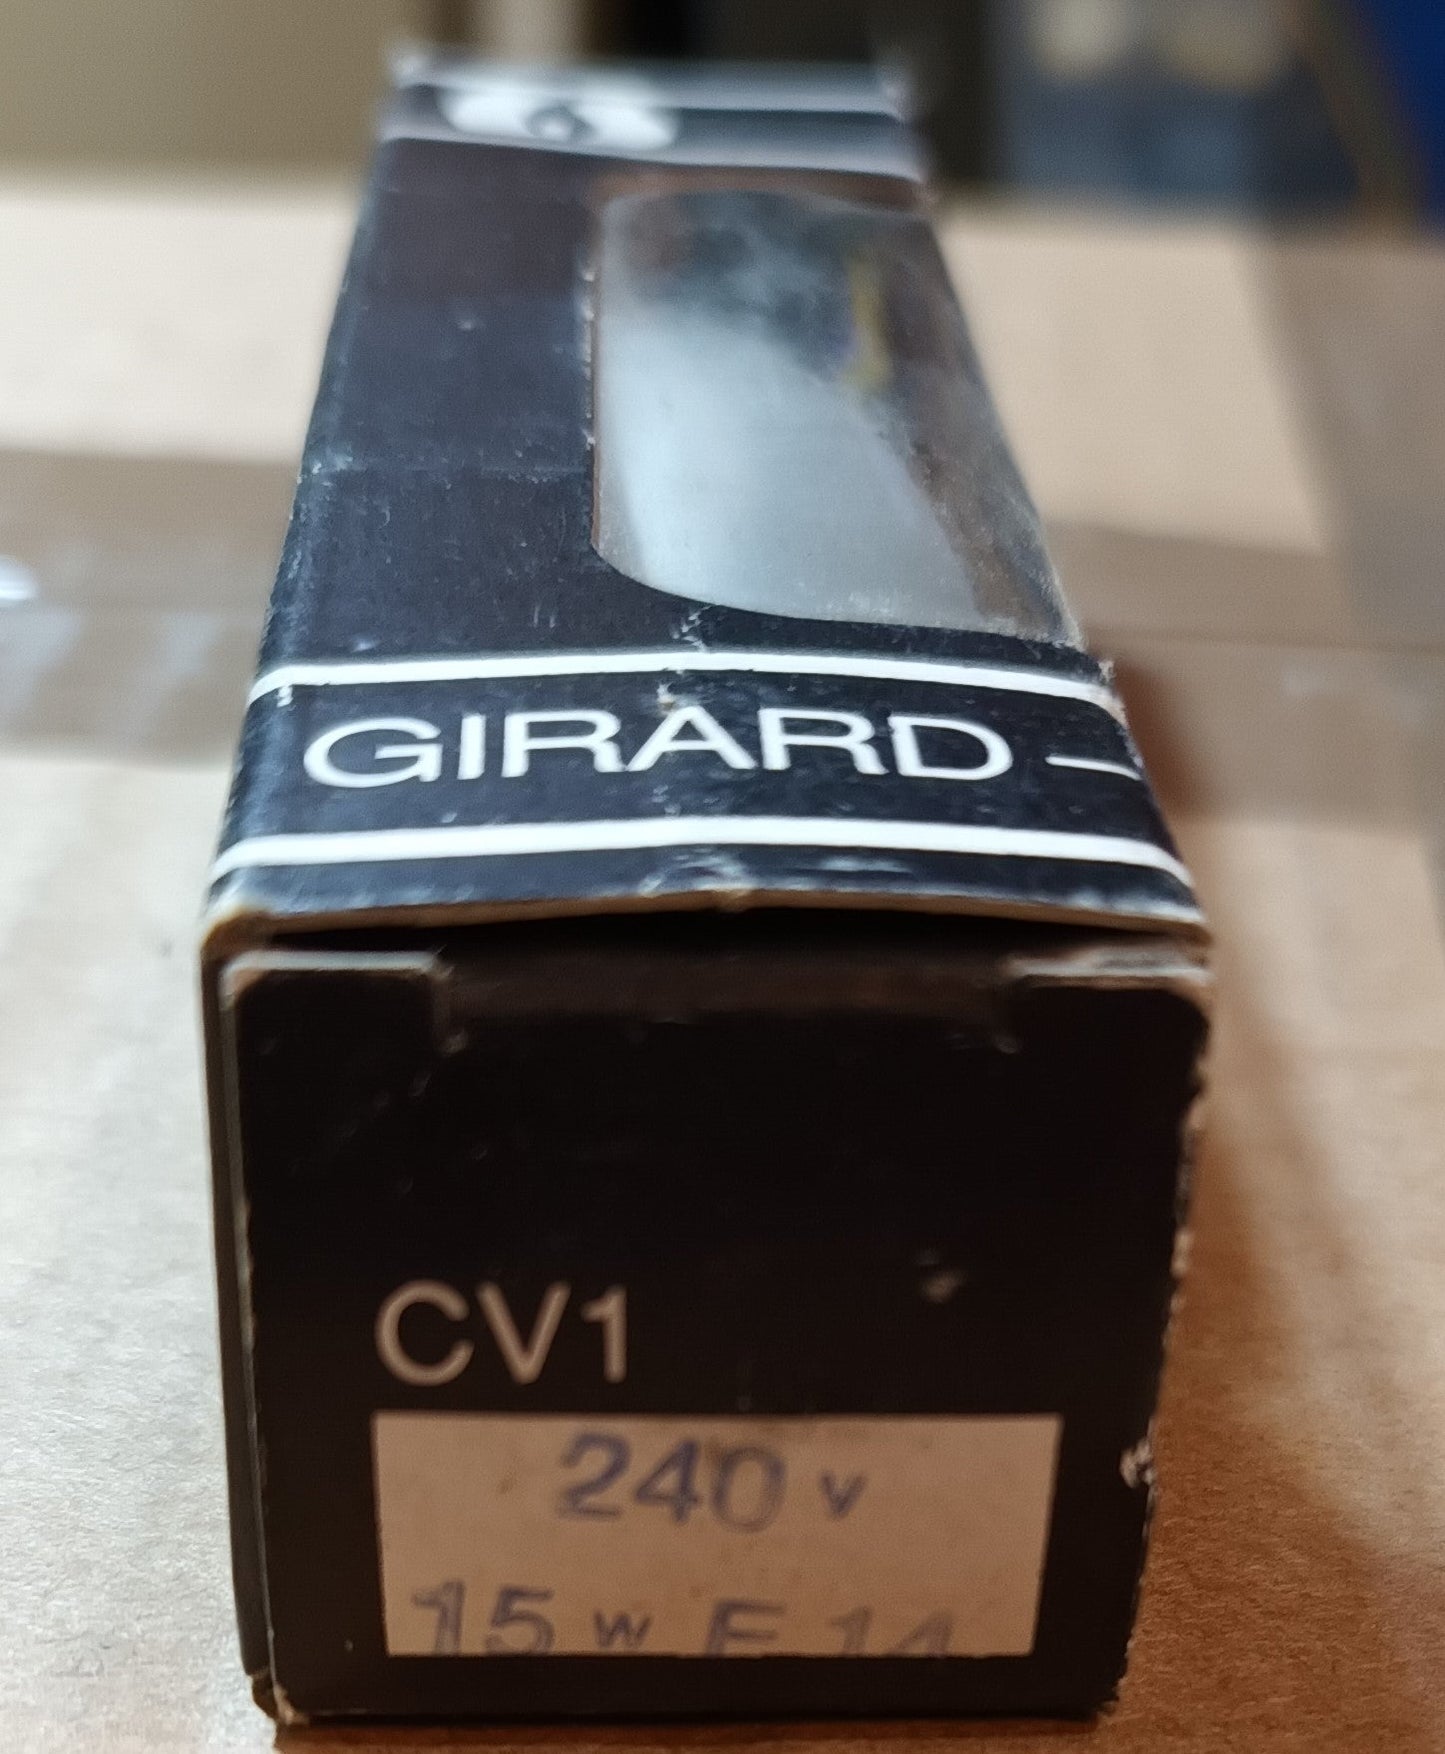 Girard Sudron 15W E14 240V CV1 Opal Bent Tip Candle only </p>£2